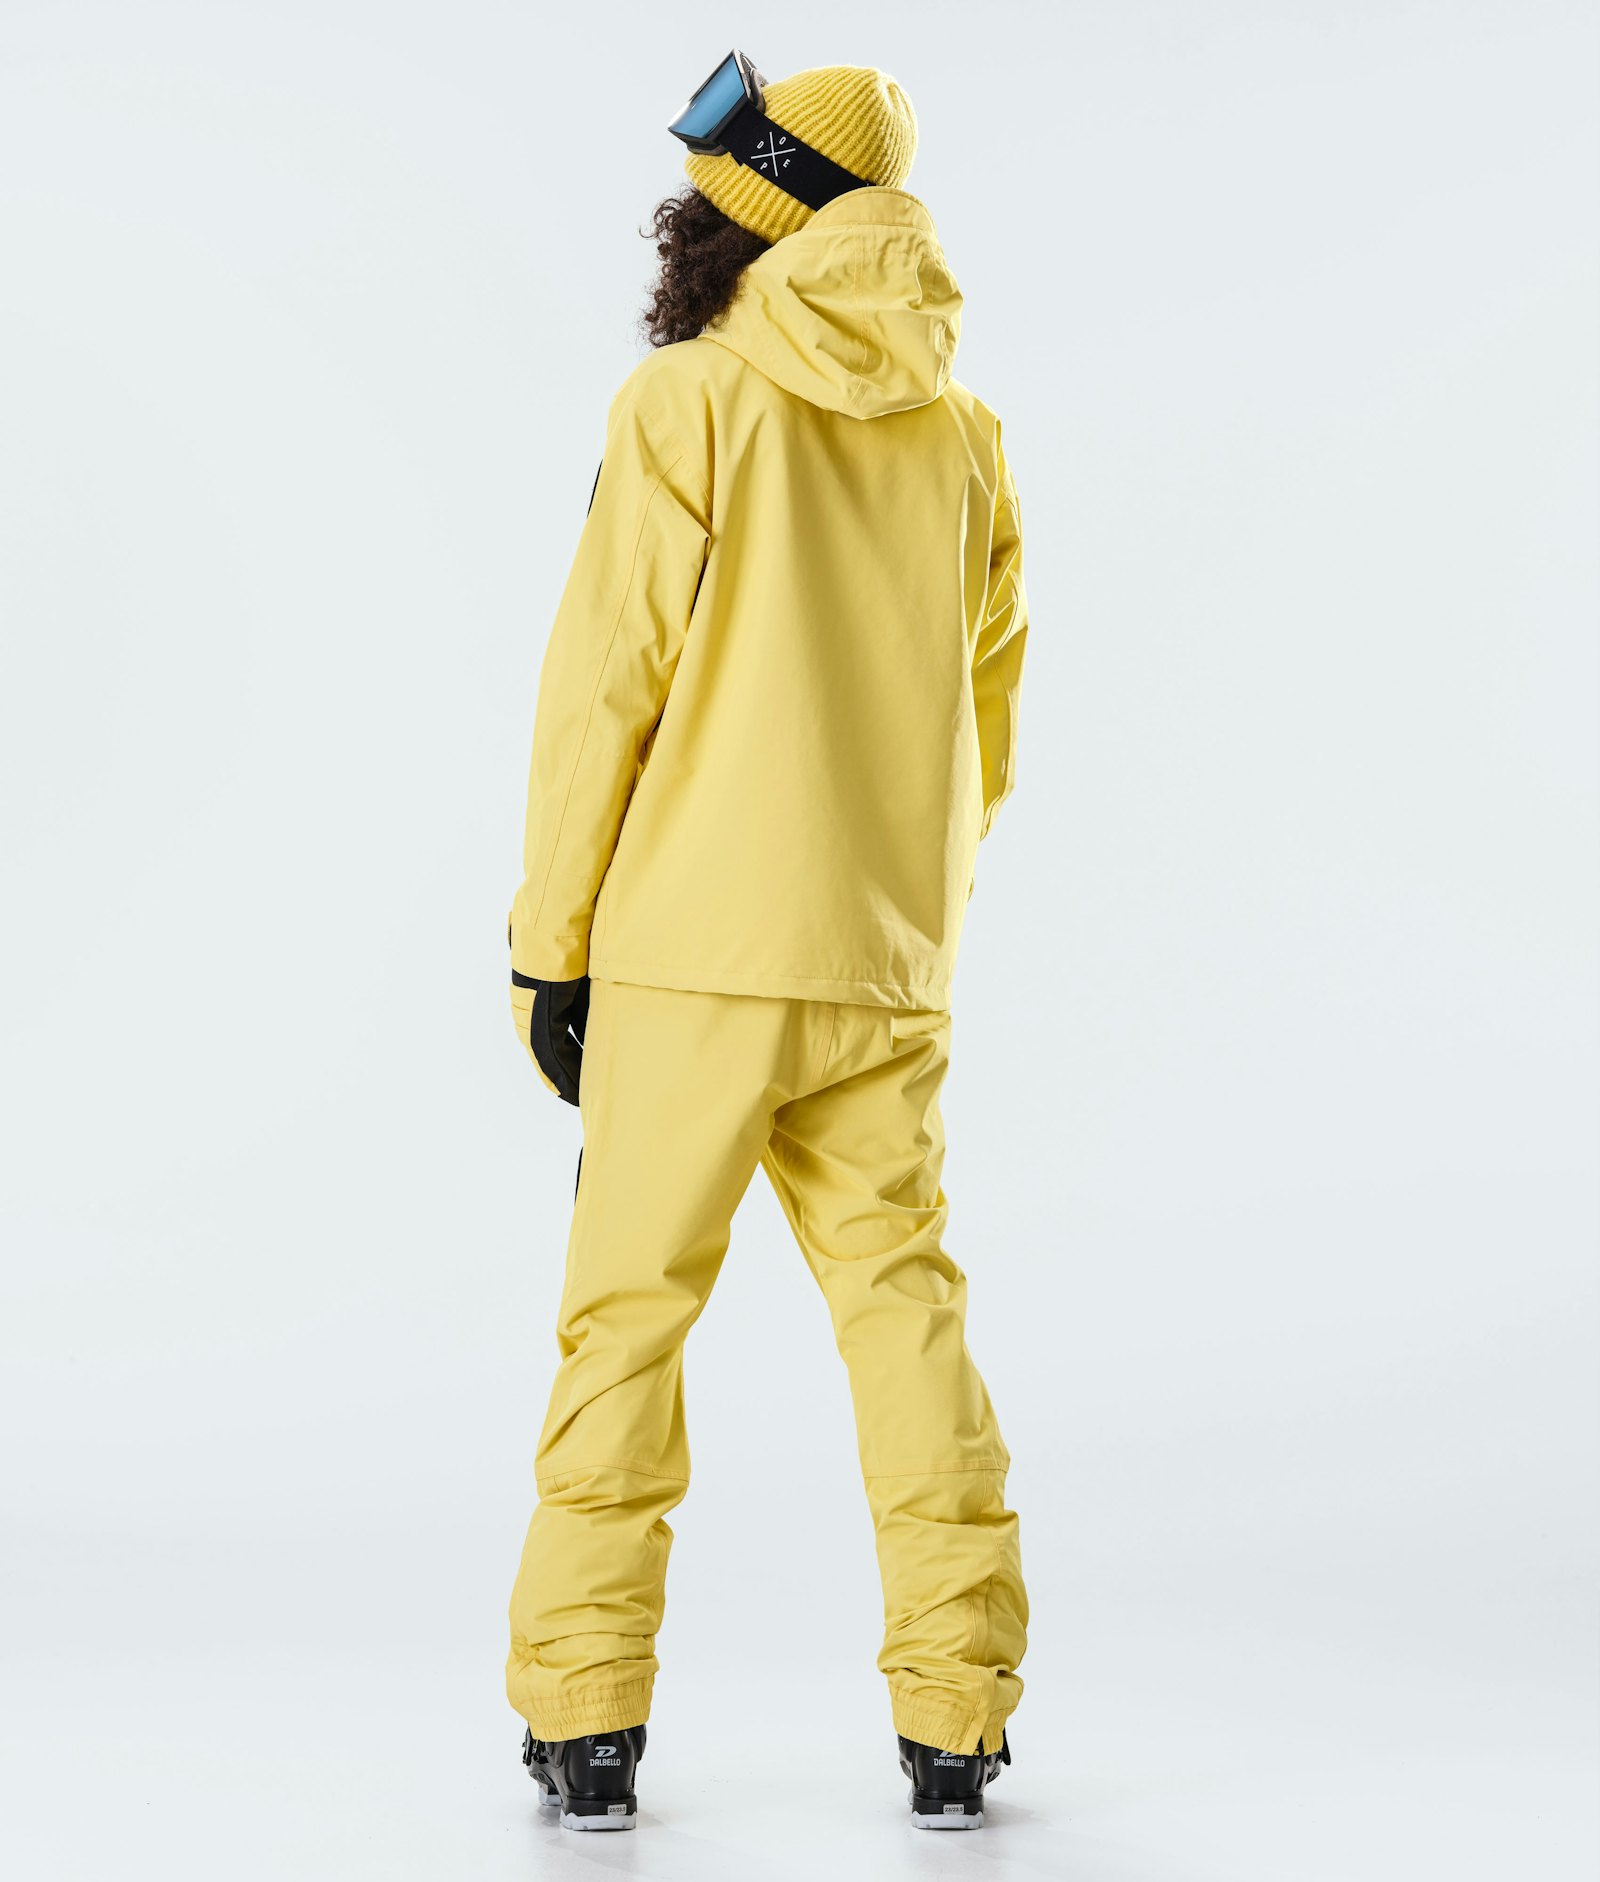 Blizzard W 2020 Ski Jacket Women Faded Yellow